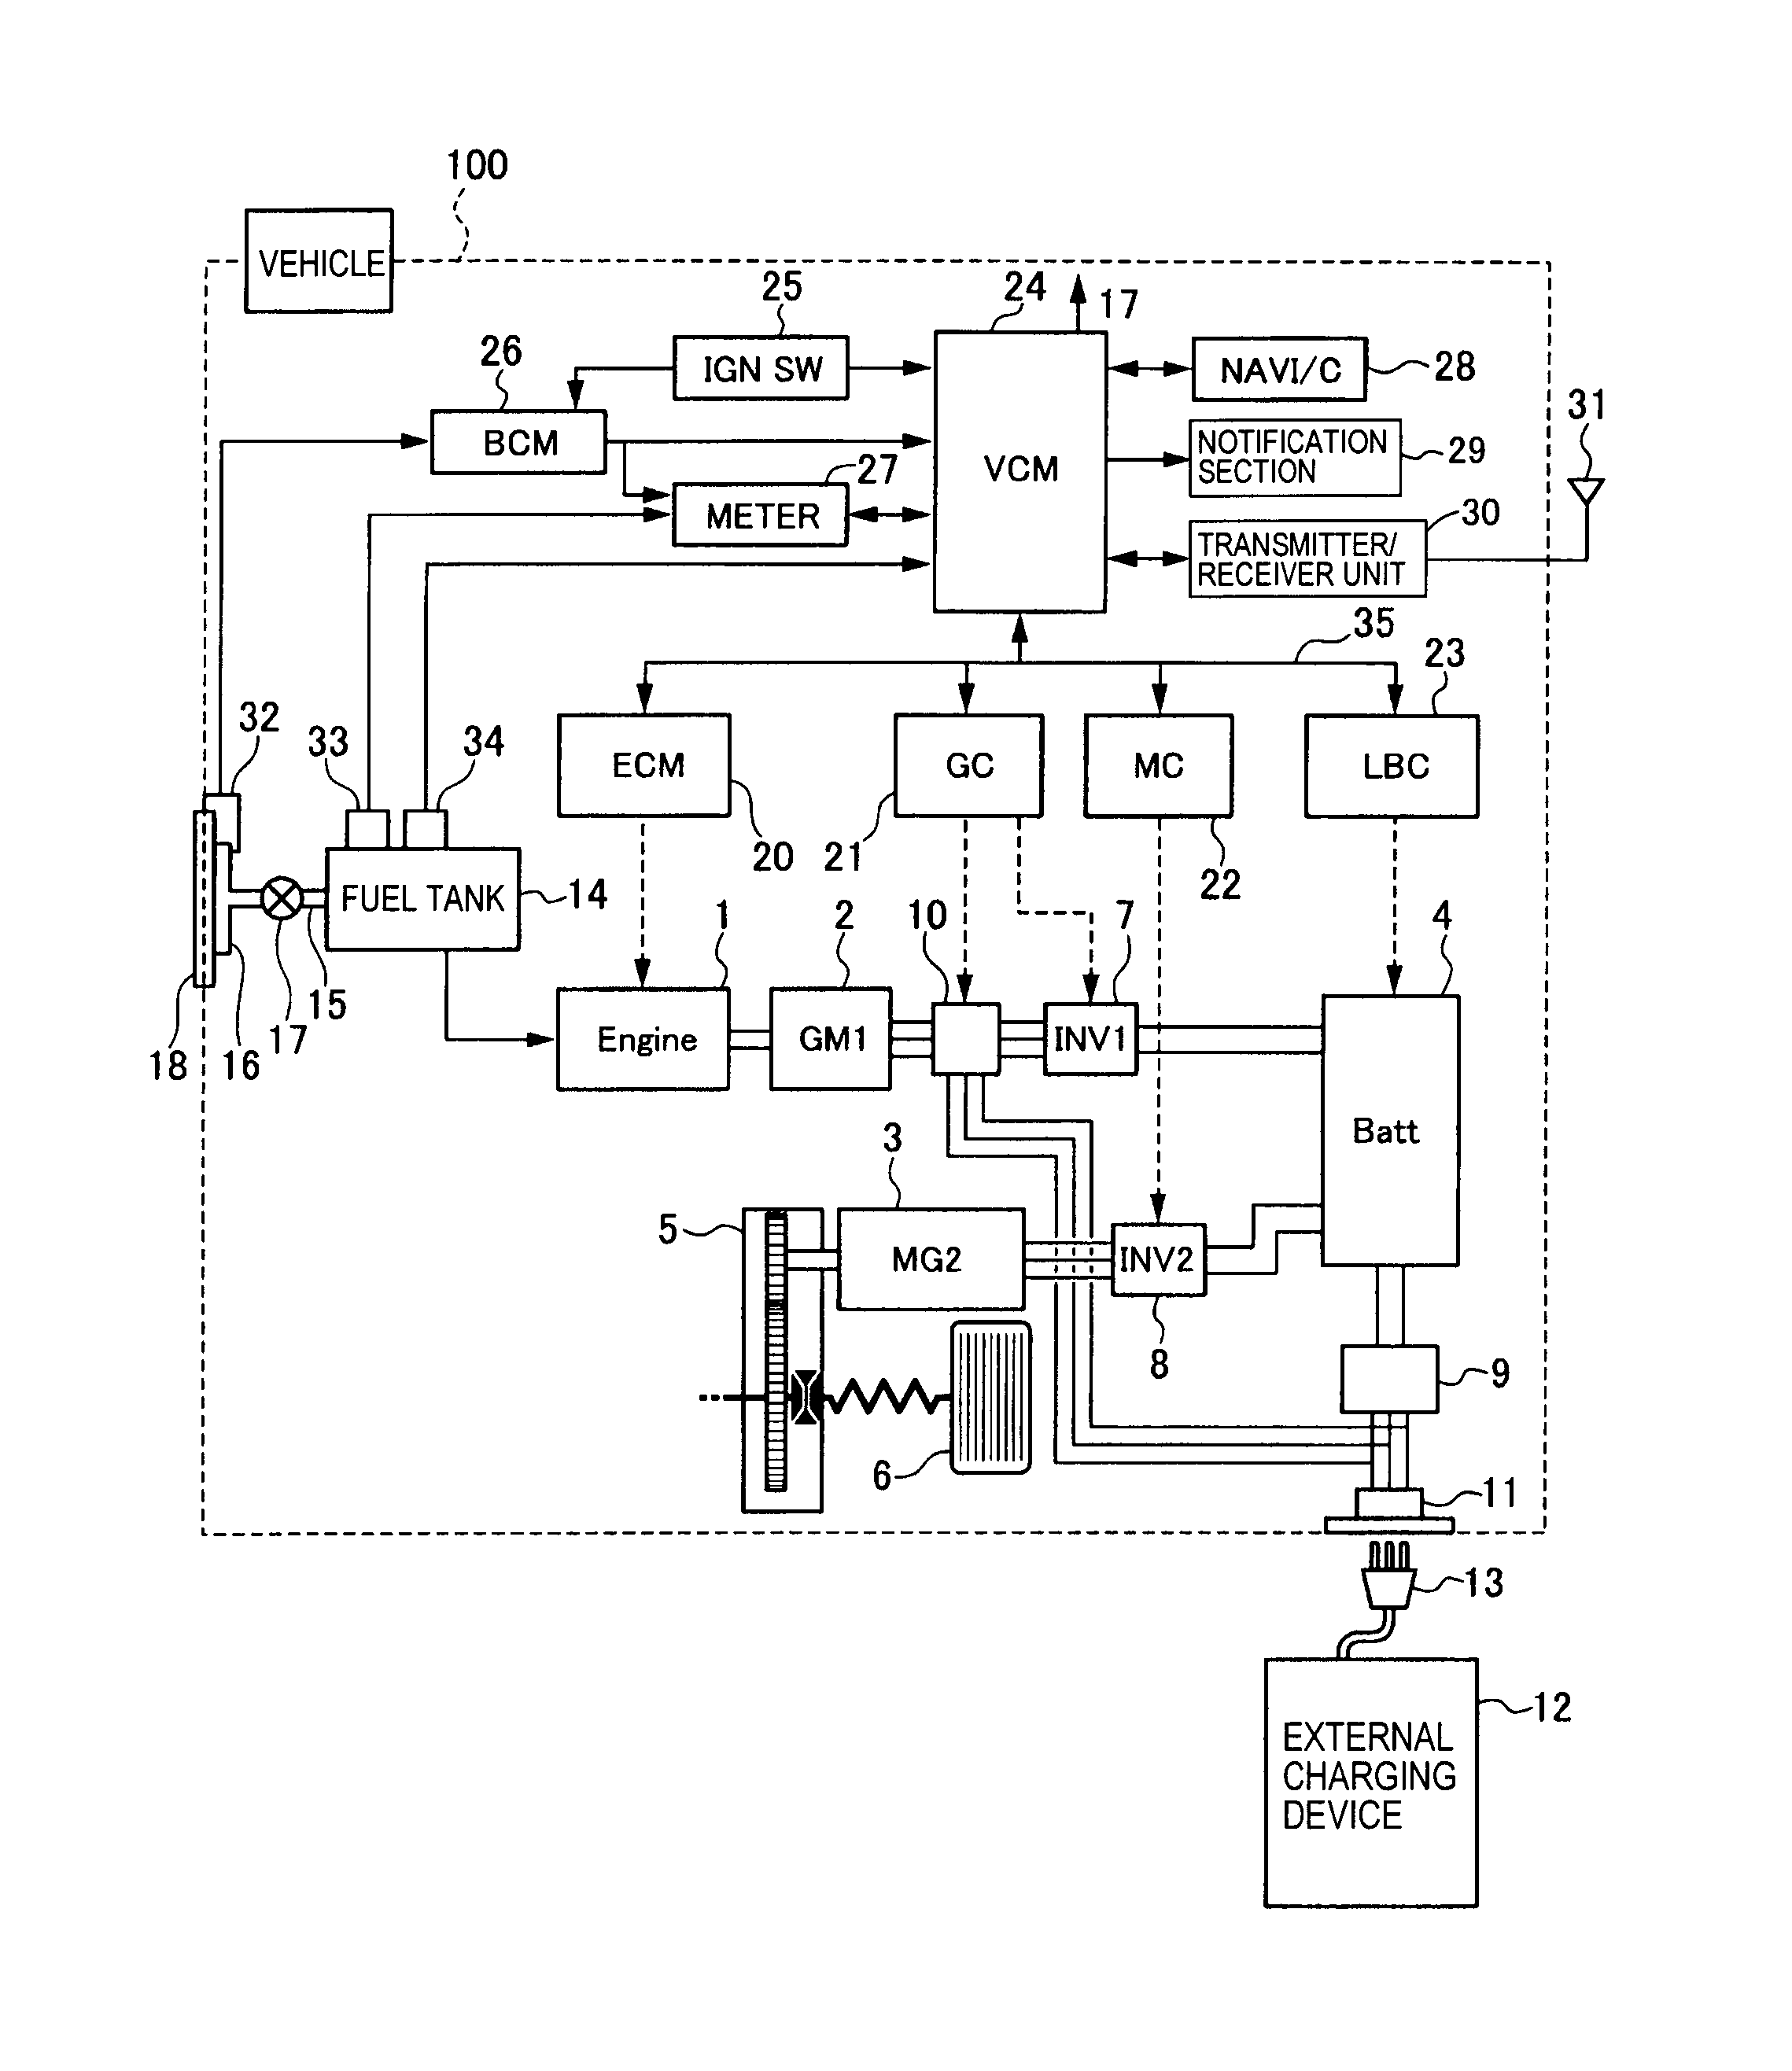 panasonic sbwa340 wiring diagram